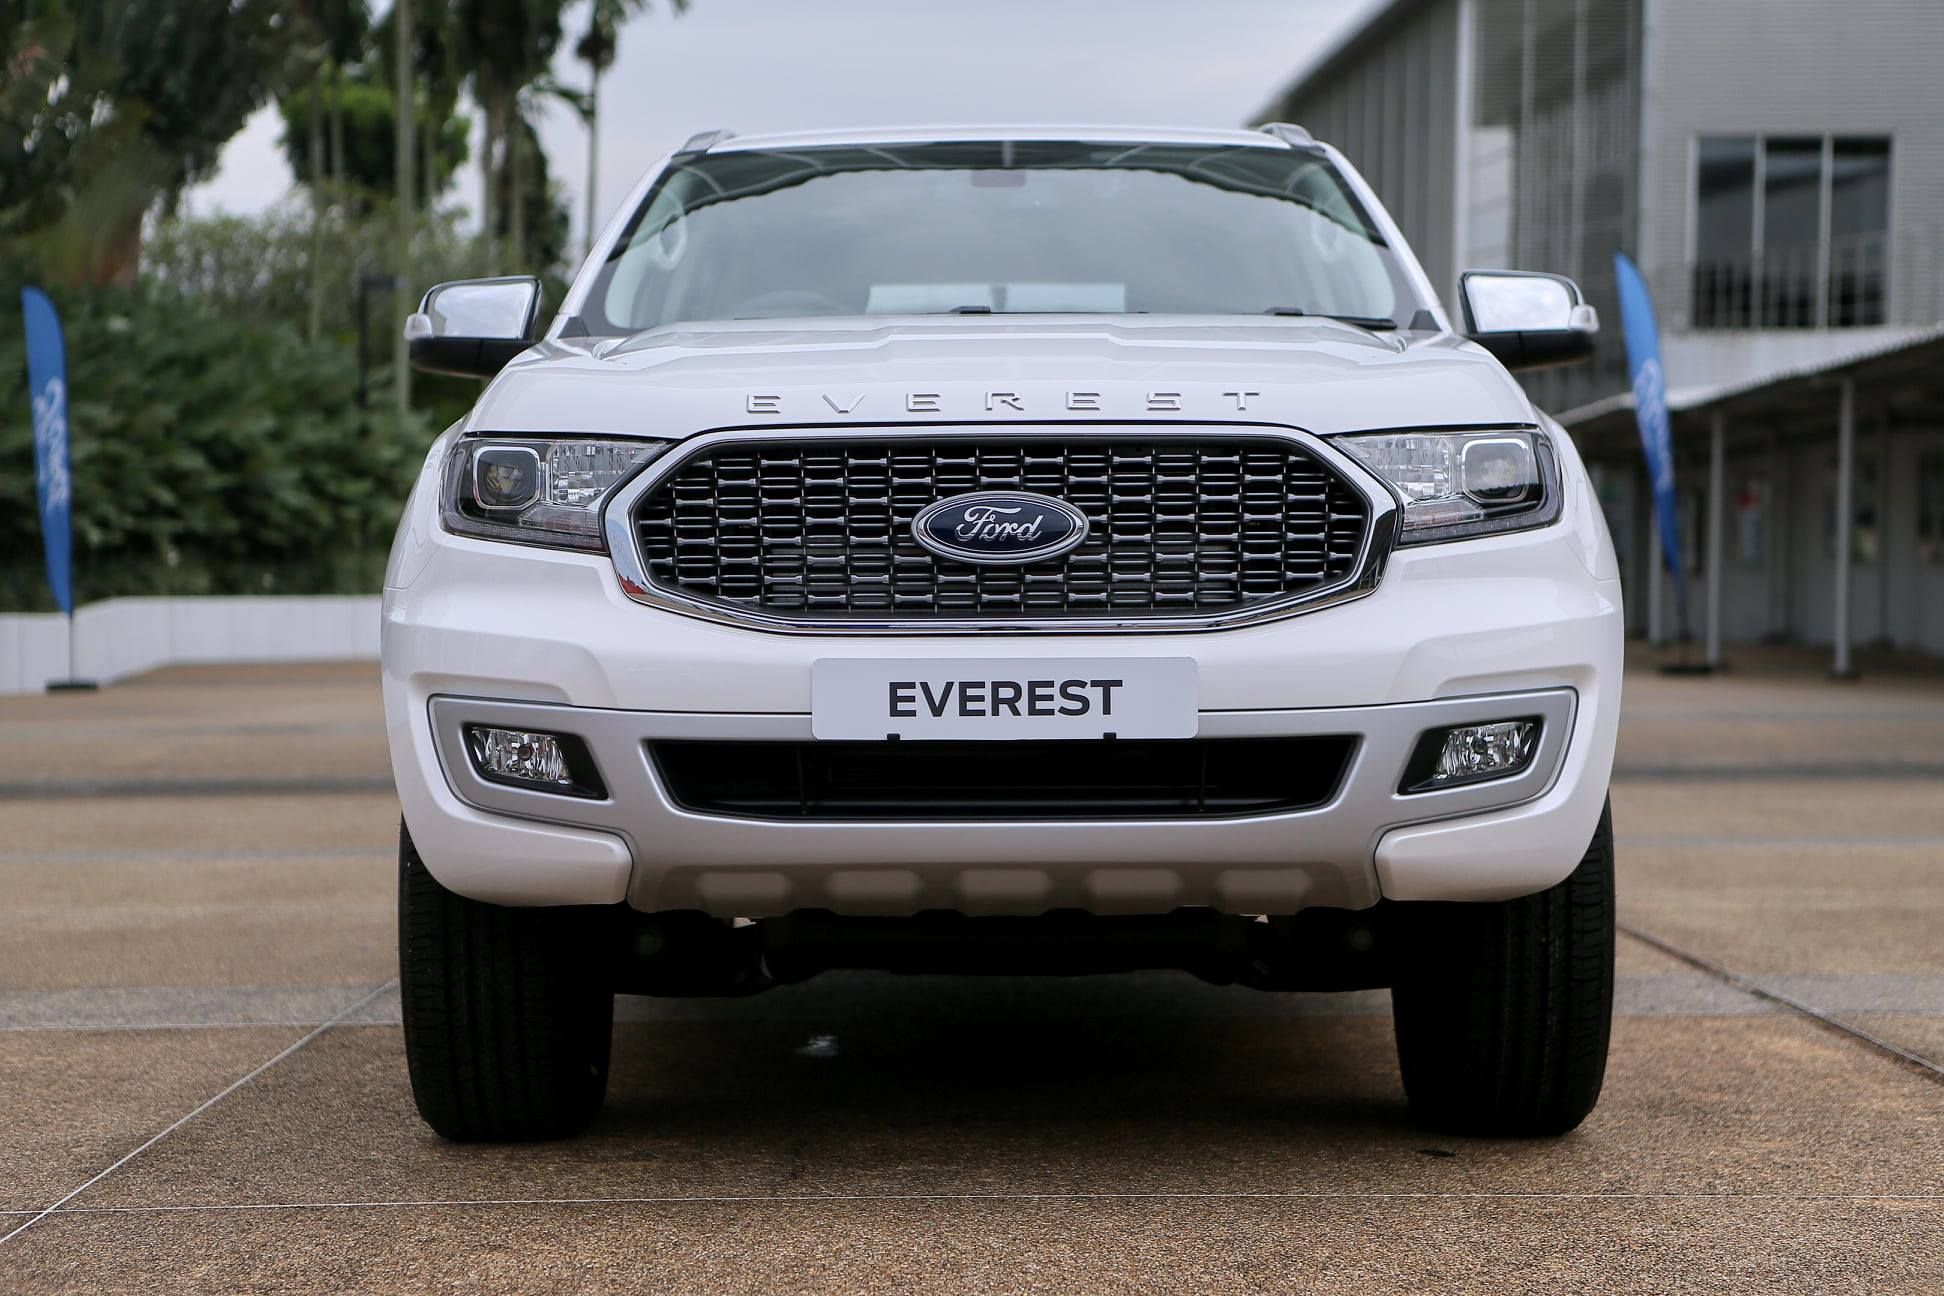 Ford Everest 2021 Giá Xe Đánh Giá  Hình Ảnh  anycarvn